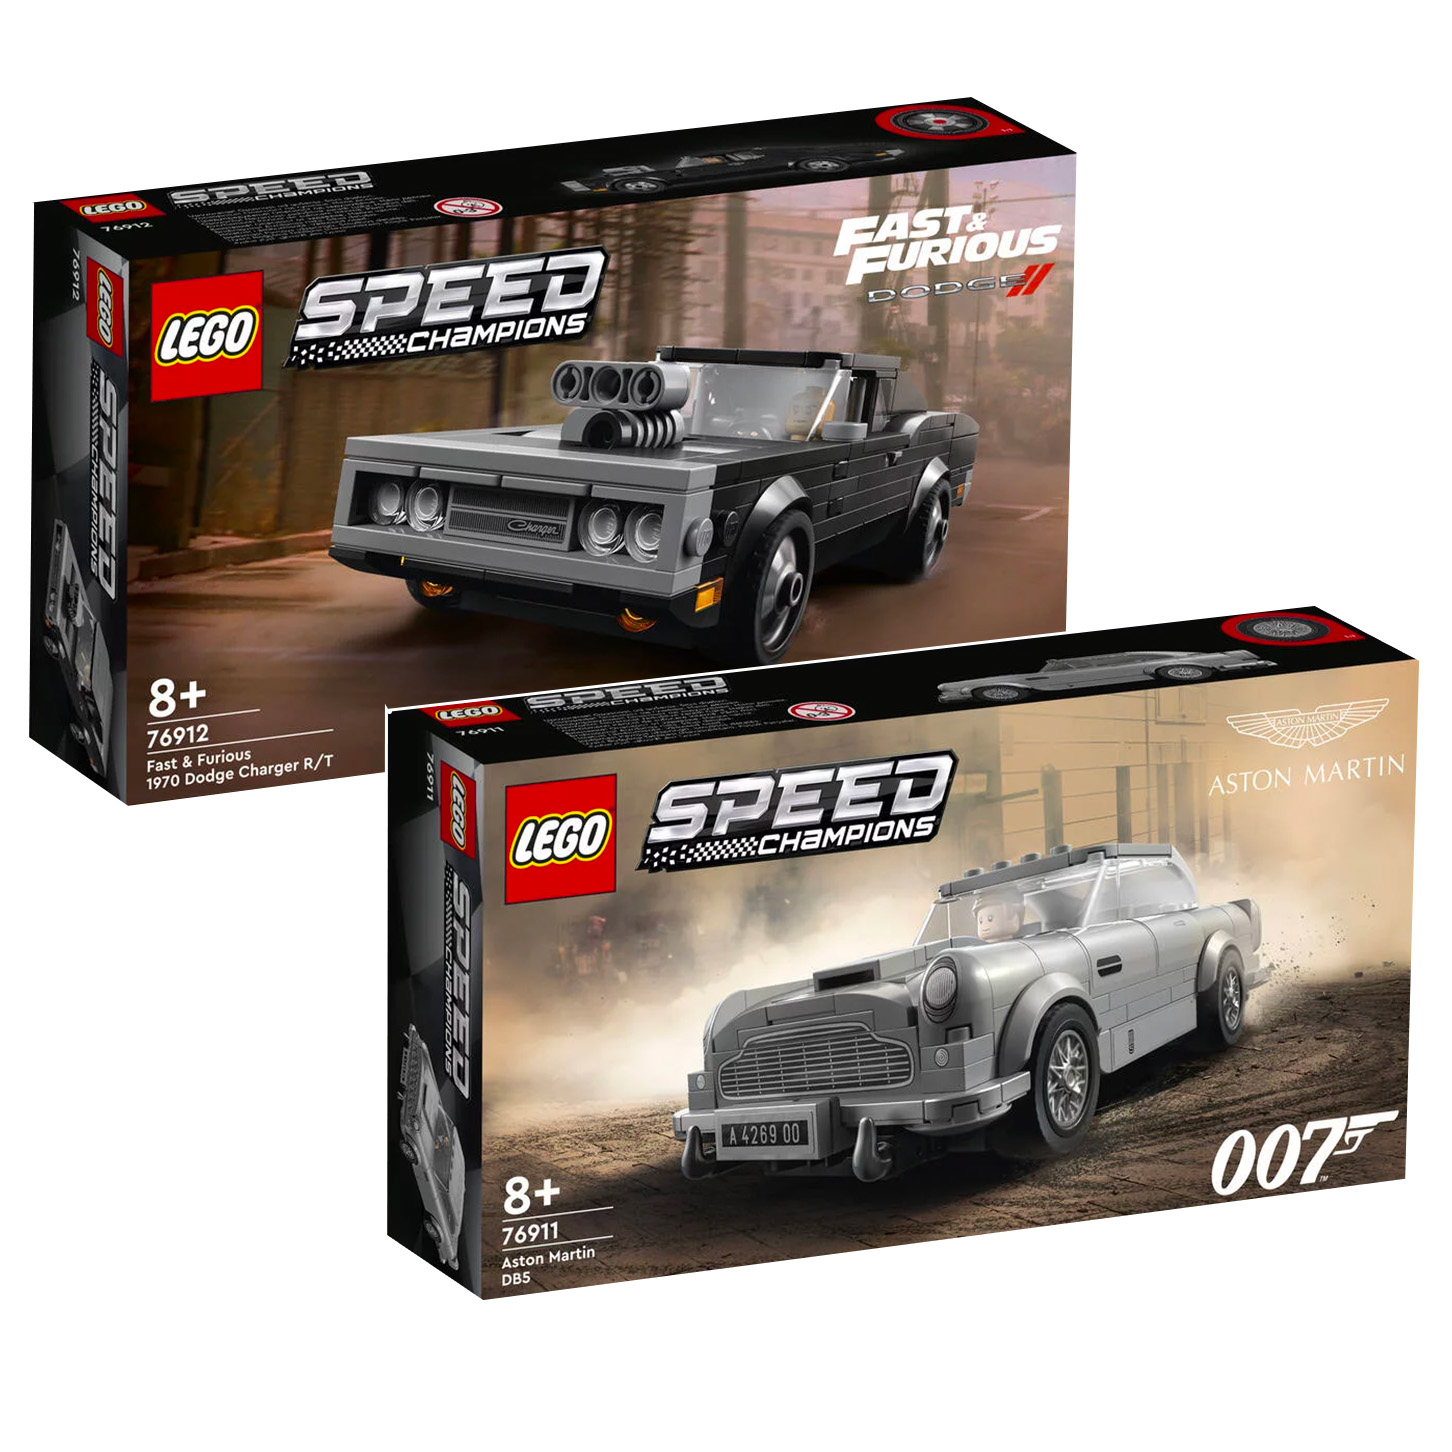 I nuovi set LEGO Speed ​​Champion 76911 Aston Martin DB5 e 76912 Fast & Furious 1970 Dodge Charger R/T sono online nel Negozio